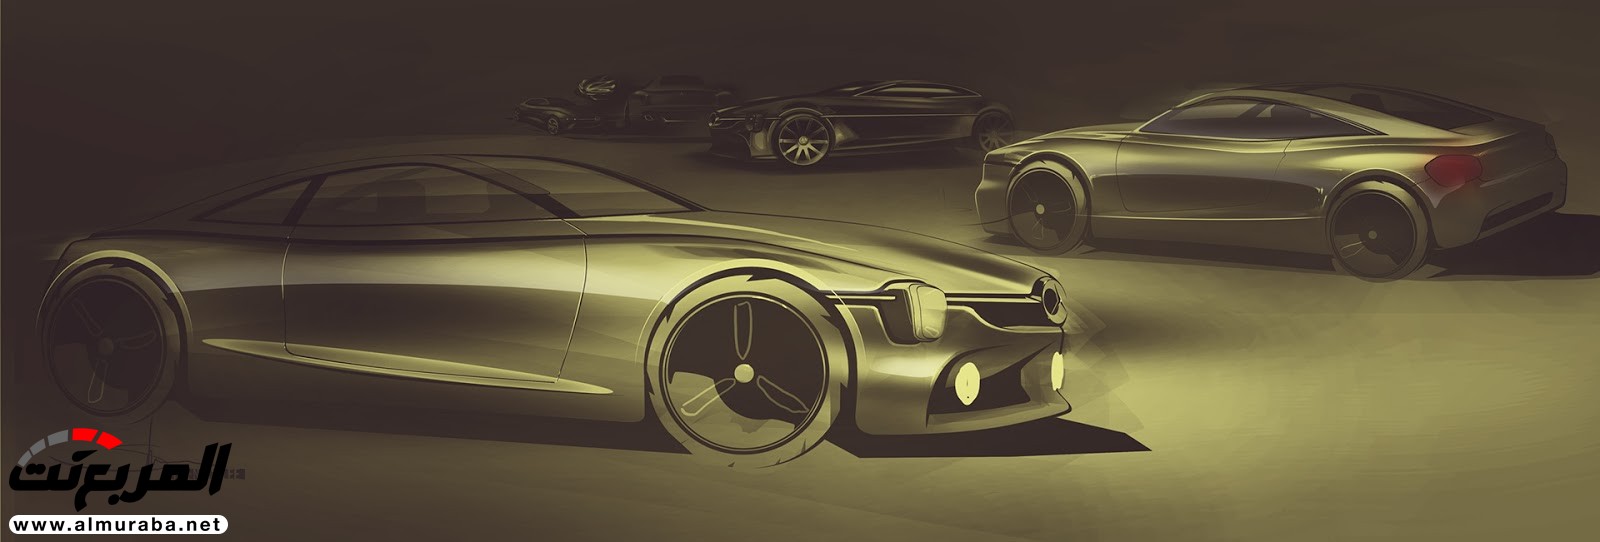 "صور افتراضية" لمرسيدس بنز 350 إس إي التي تمزج بين الأناقة الكلاسيكية والعصرية Mercedes-Benz 350 SE 30